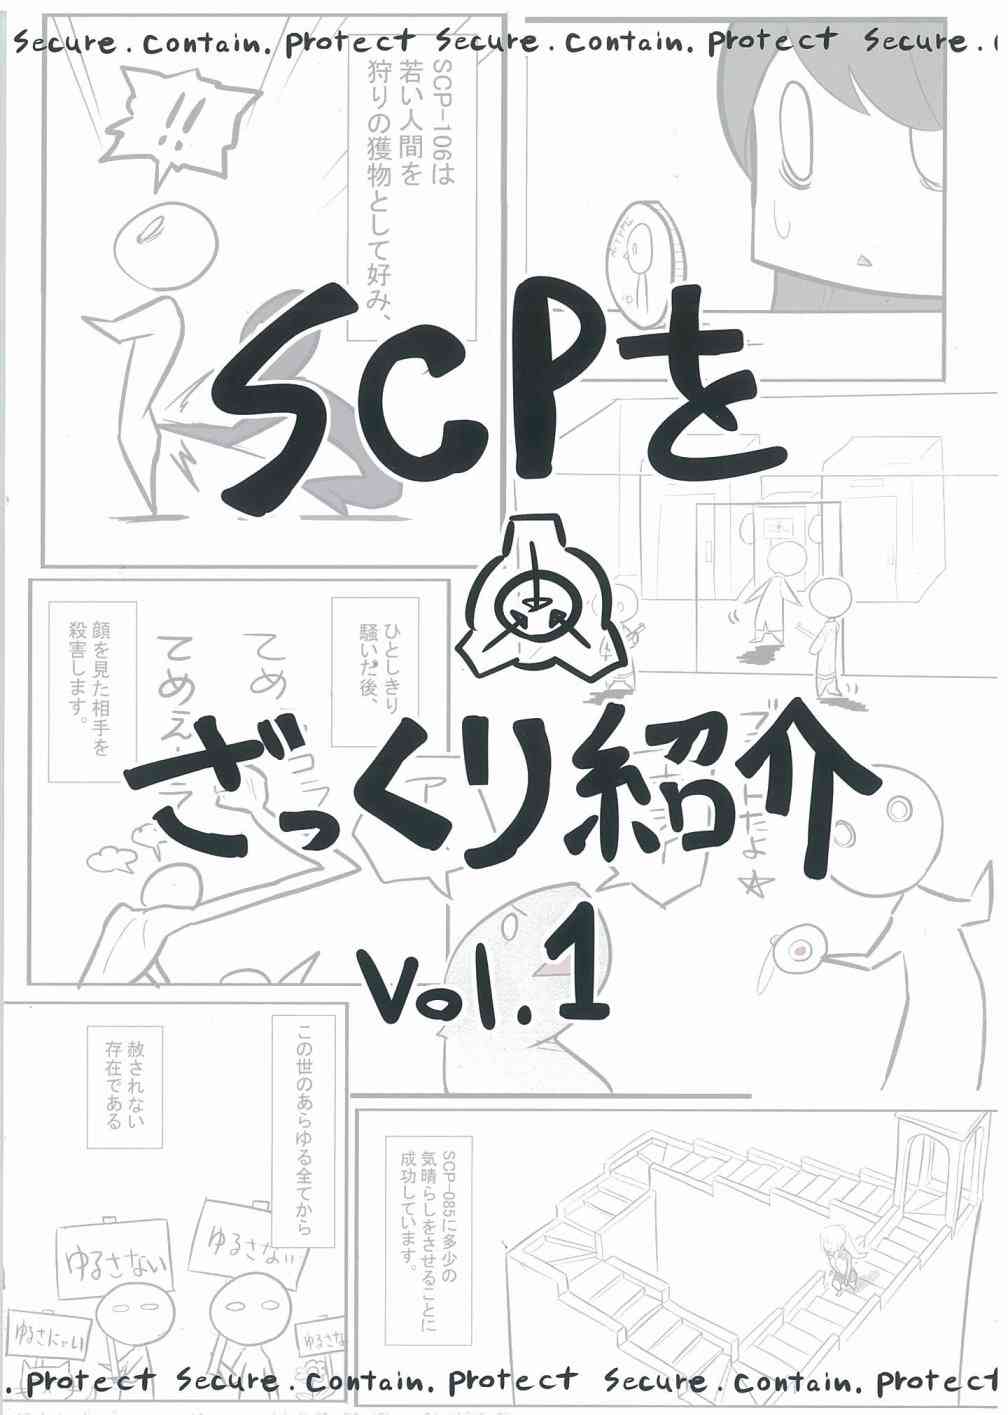 簡明易懂的SCP - C93特刊 vol.1 亞伯 - 1